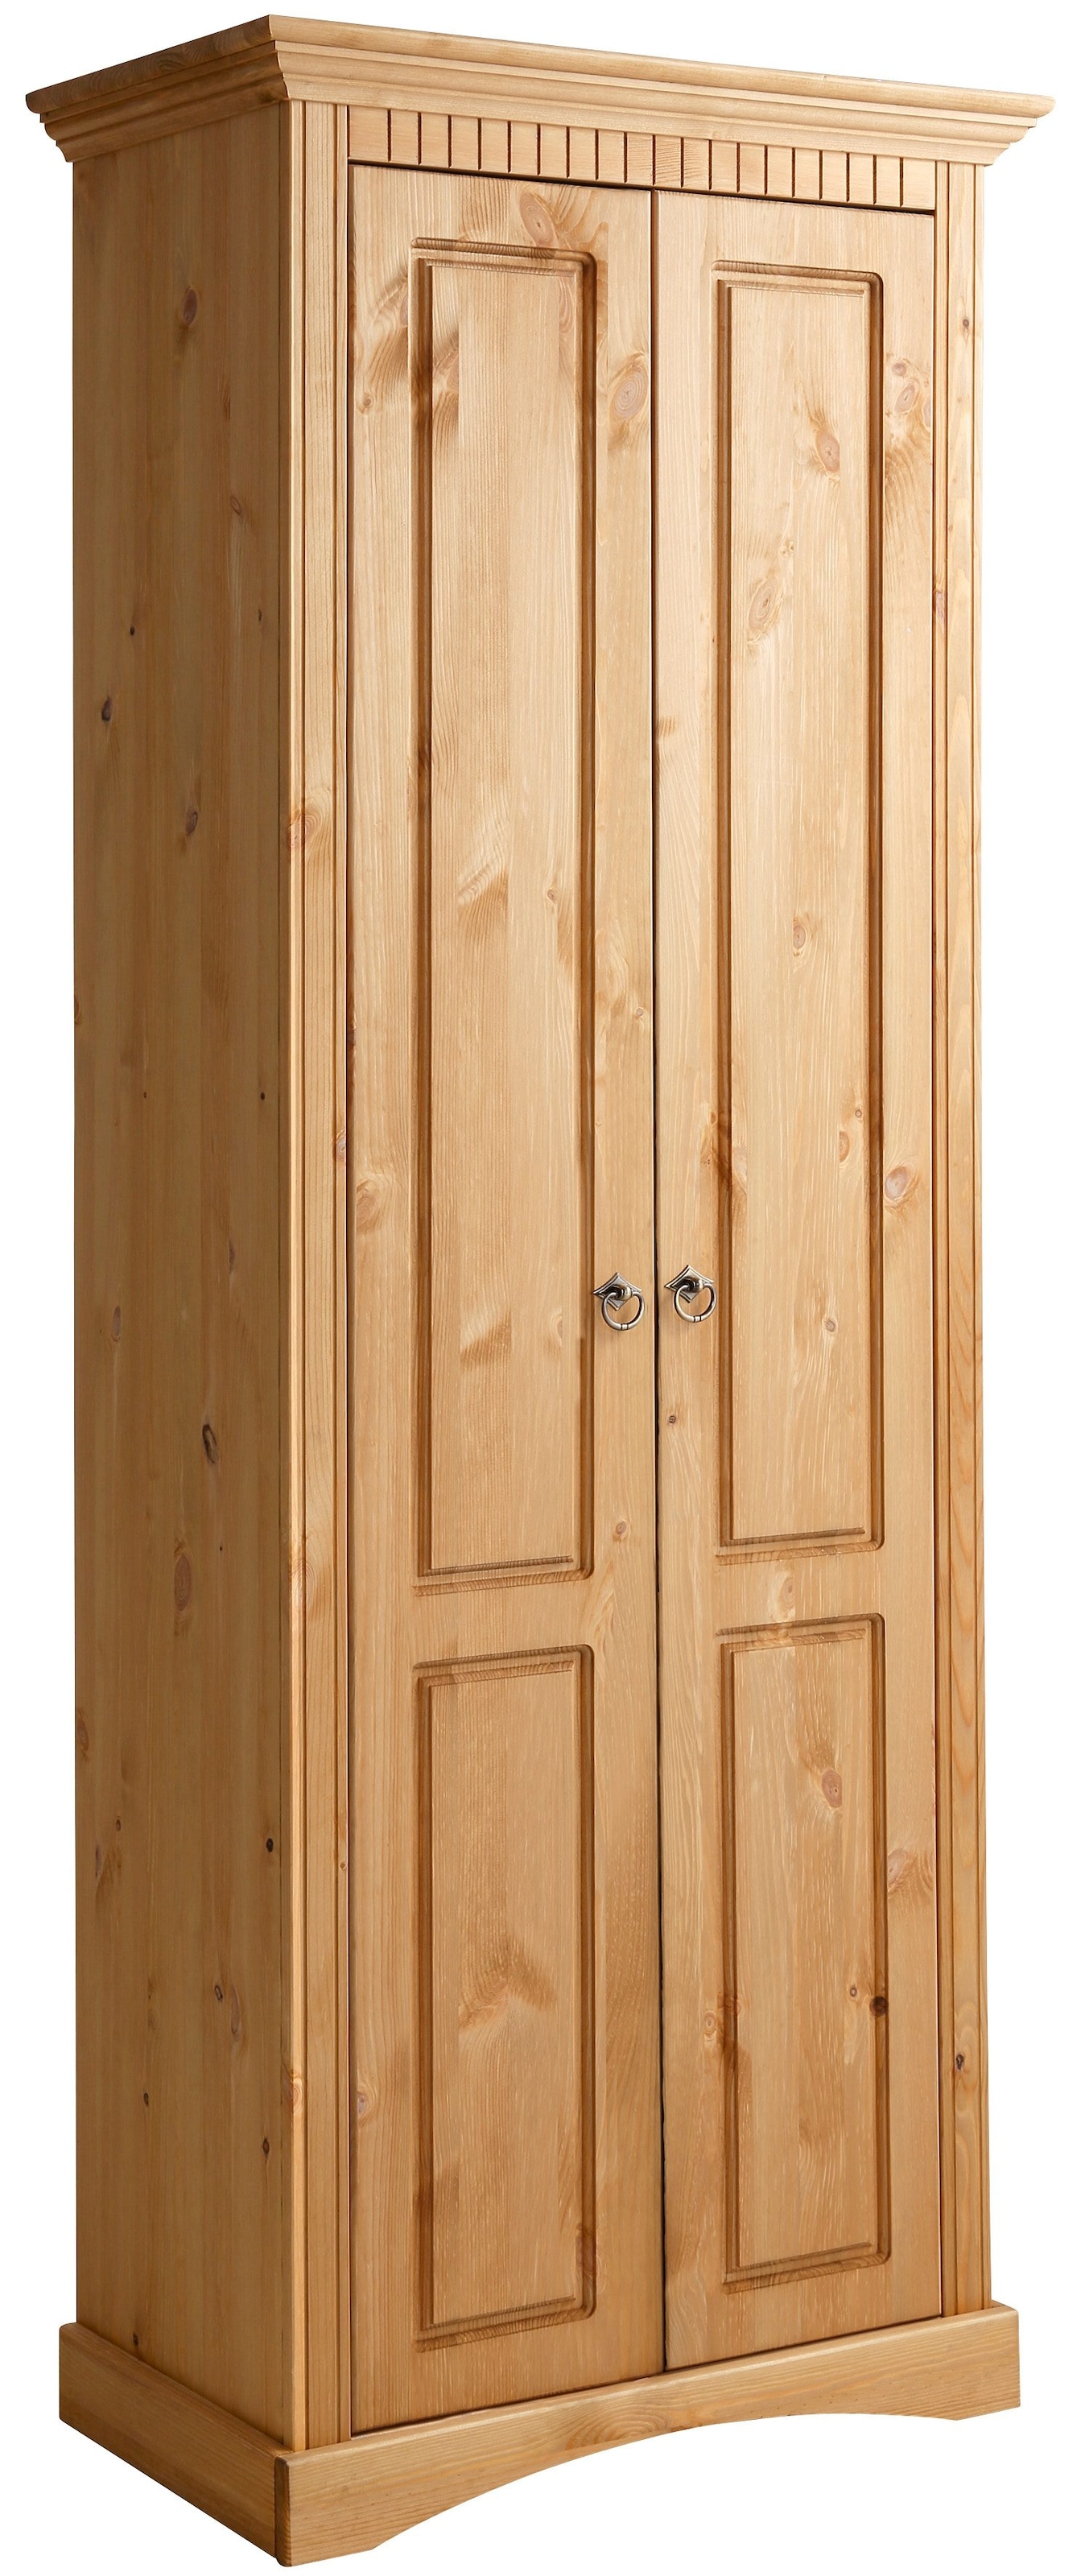 Home affaire Garderobenschrank »Rustic«, aus massiver Kiefer, Breite 71 cm,  mit Kassetenoptik günstig kaufen